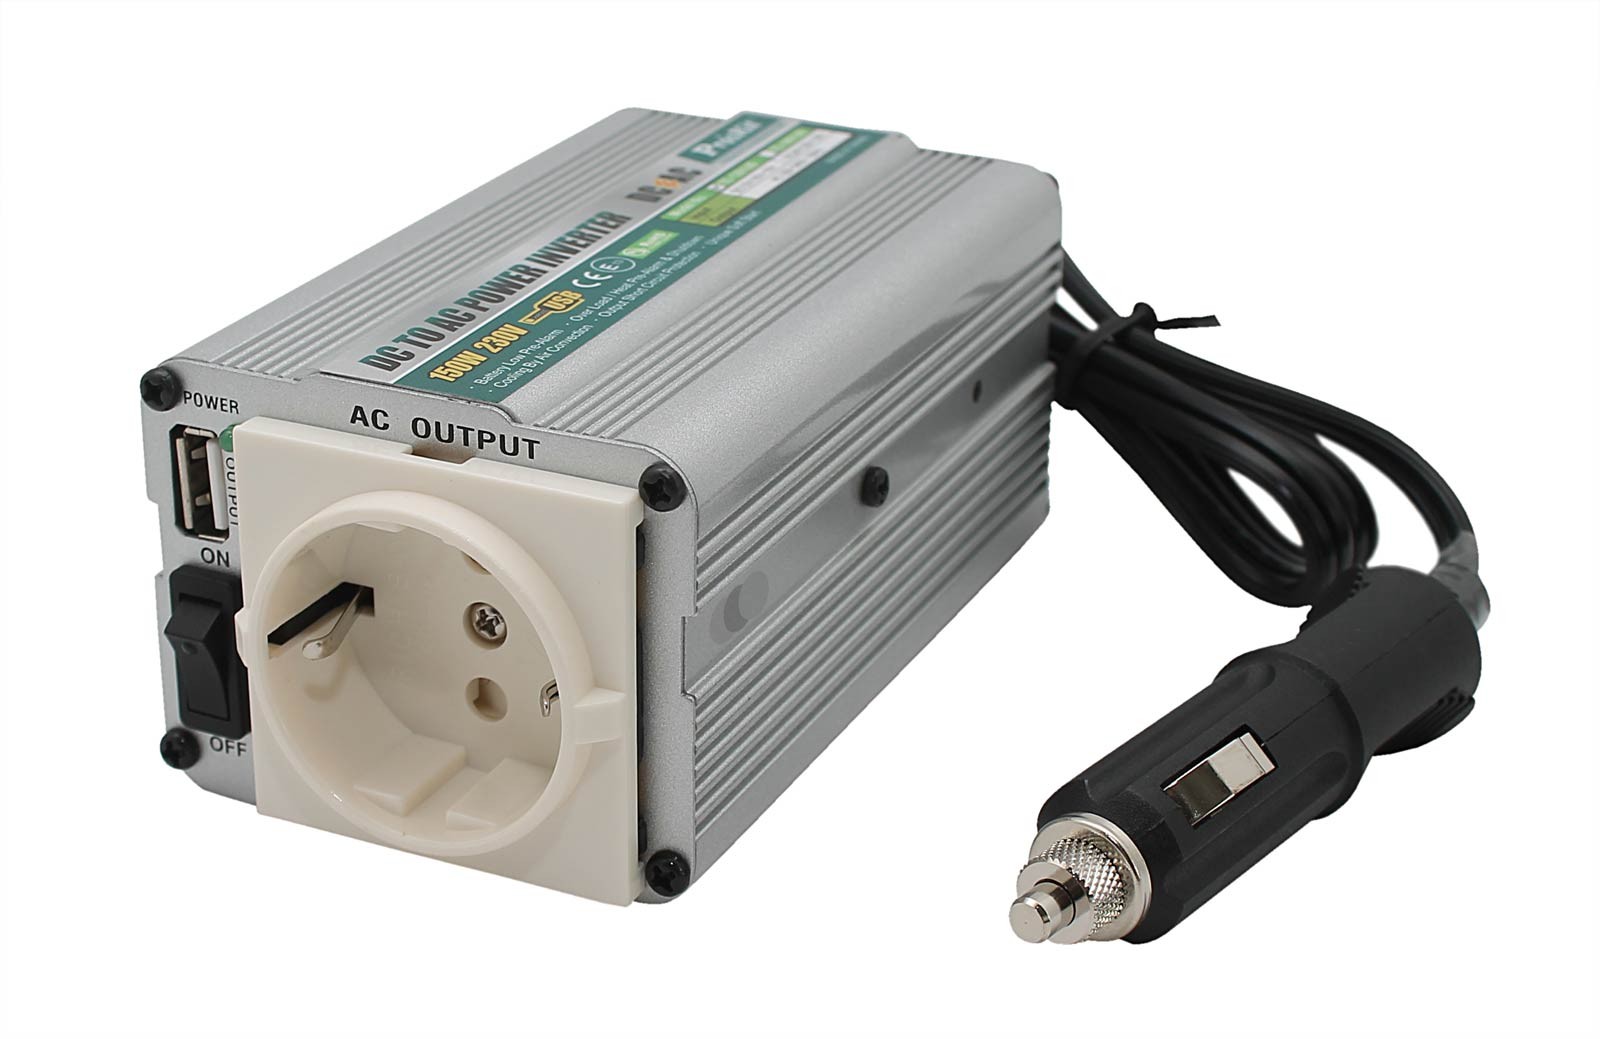 Spannungswandler 12V auf 230V, DC to AC Power Inverter, Zigarrettenanzünder, USB-Anschluss 